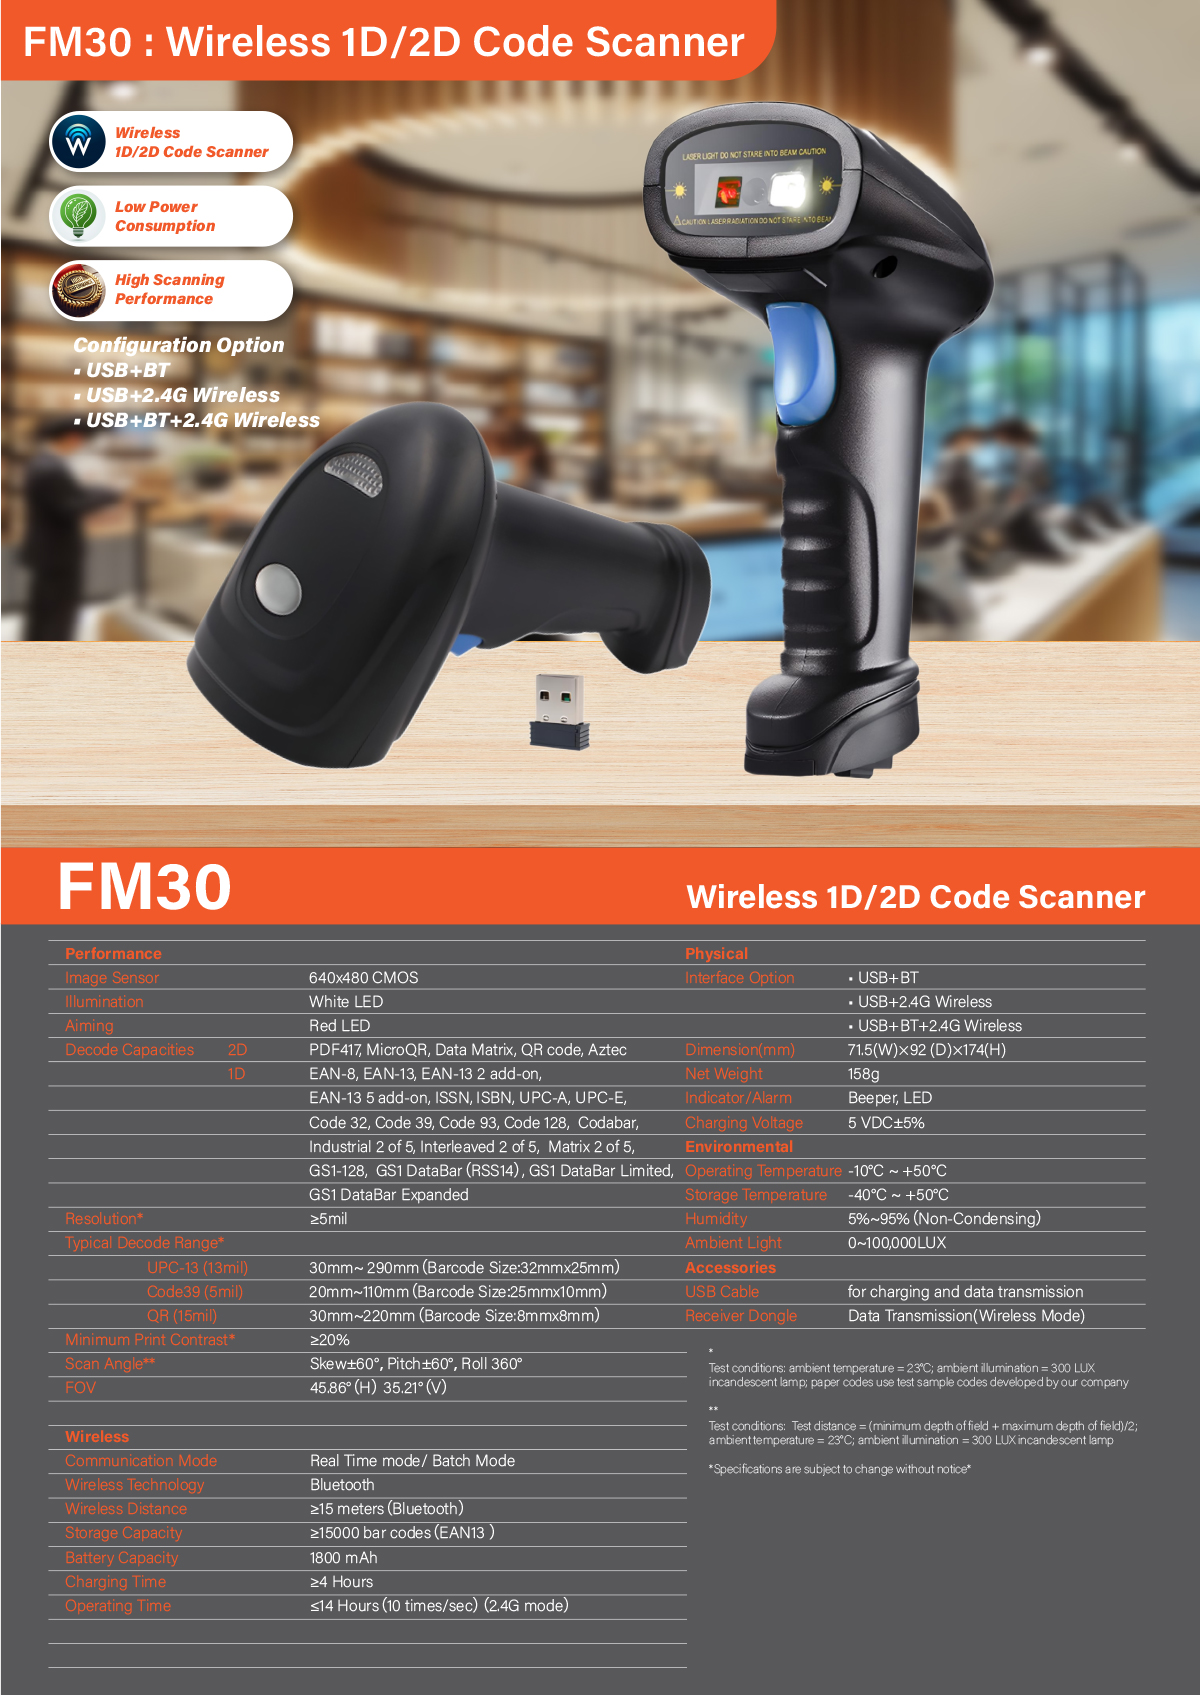 FM30 Wireless 1D&2D Code Scanner